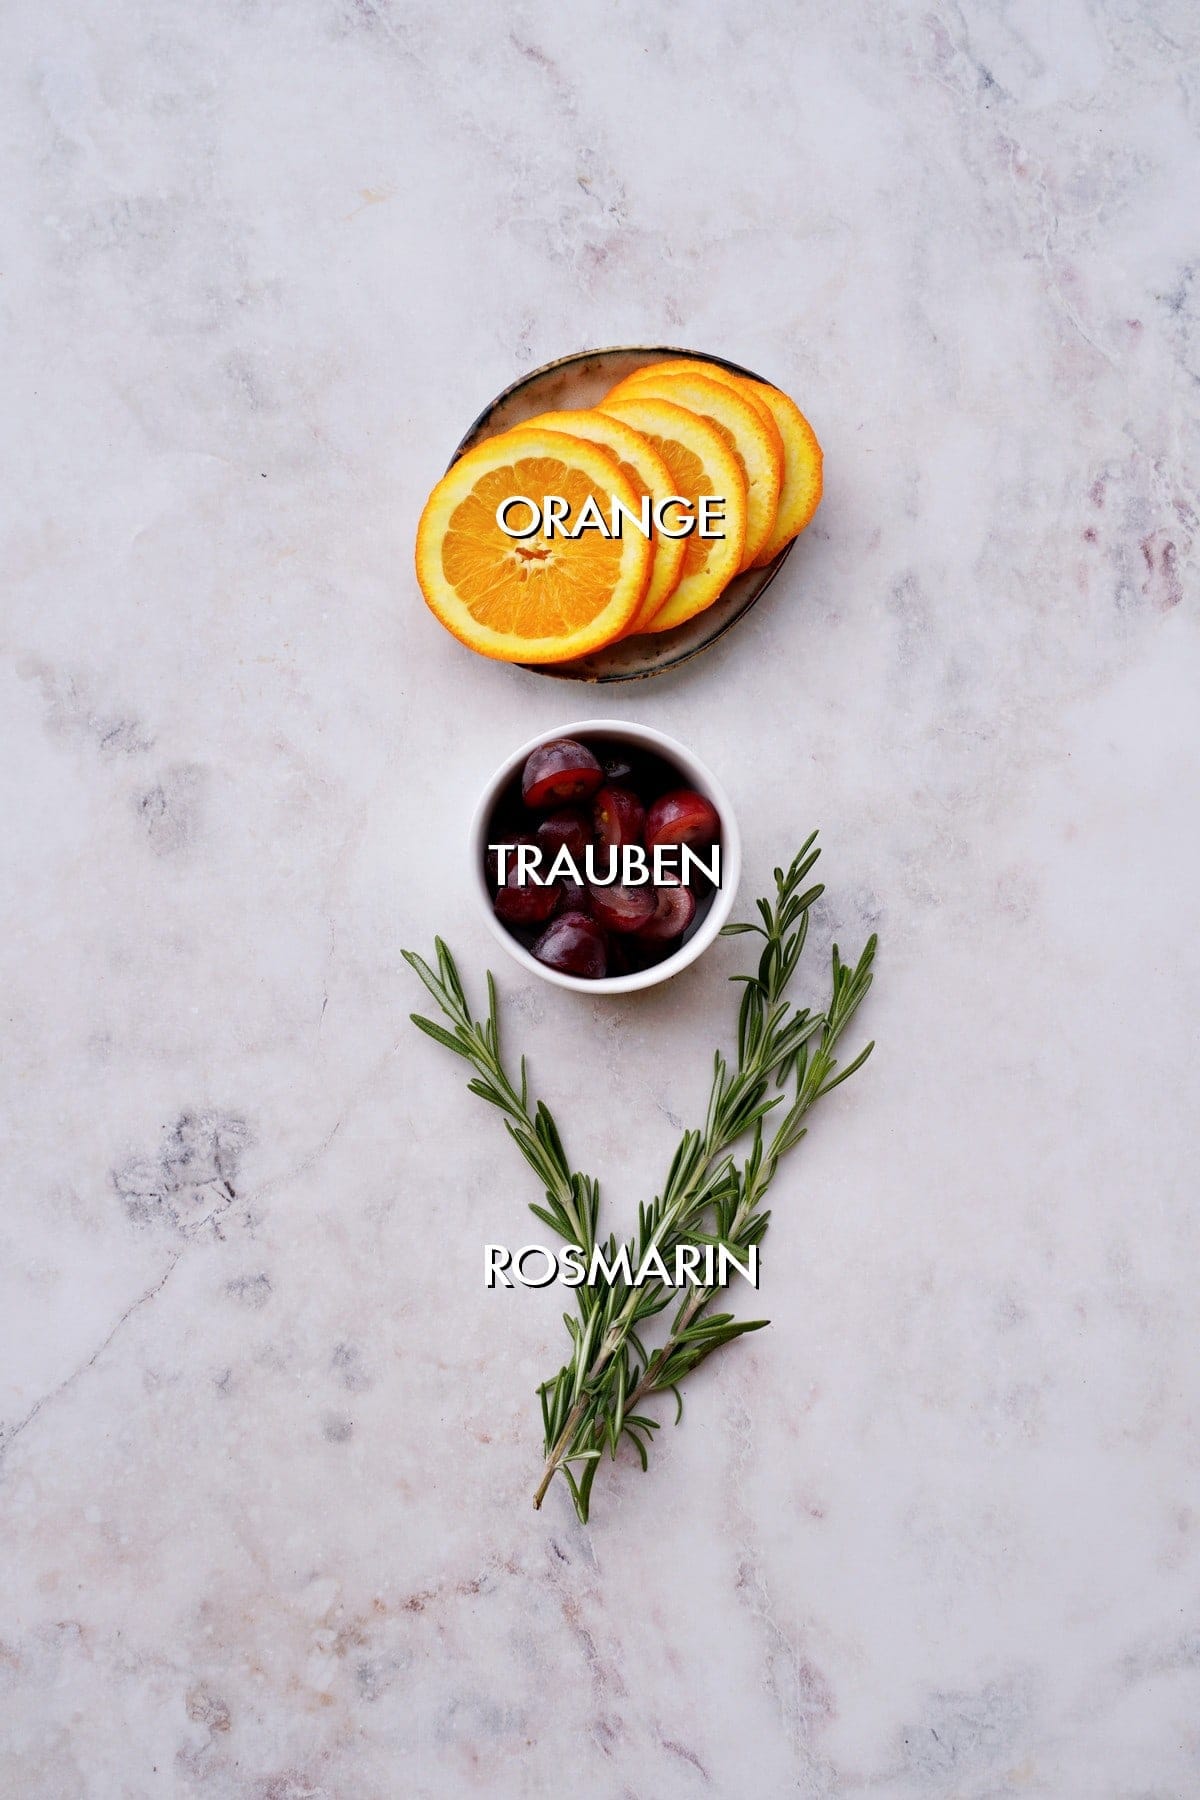 Orange, Trauben, Rosmarin auf weißem Hintergrund